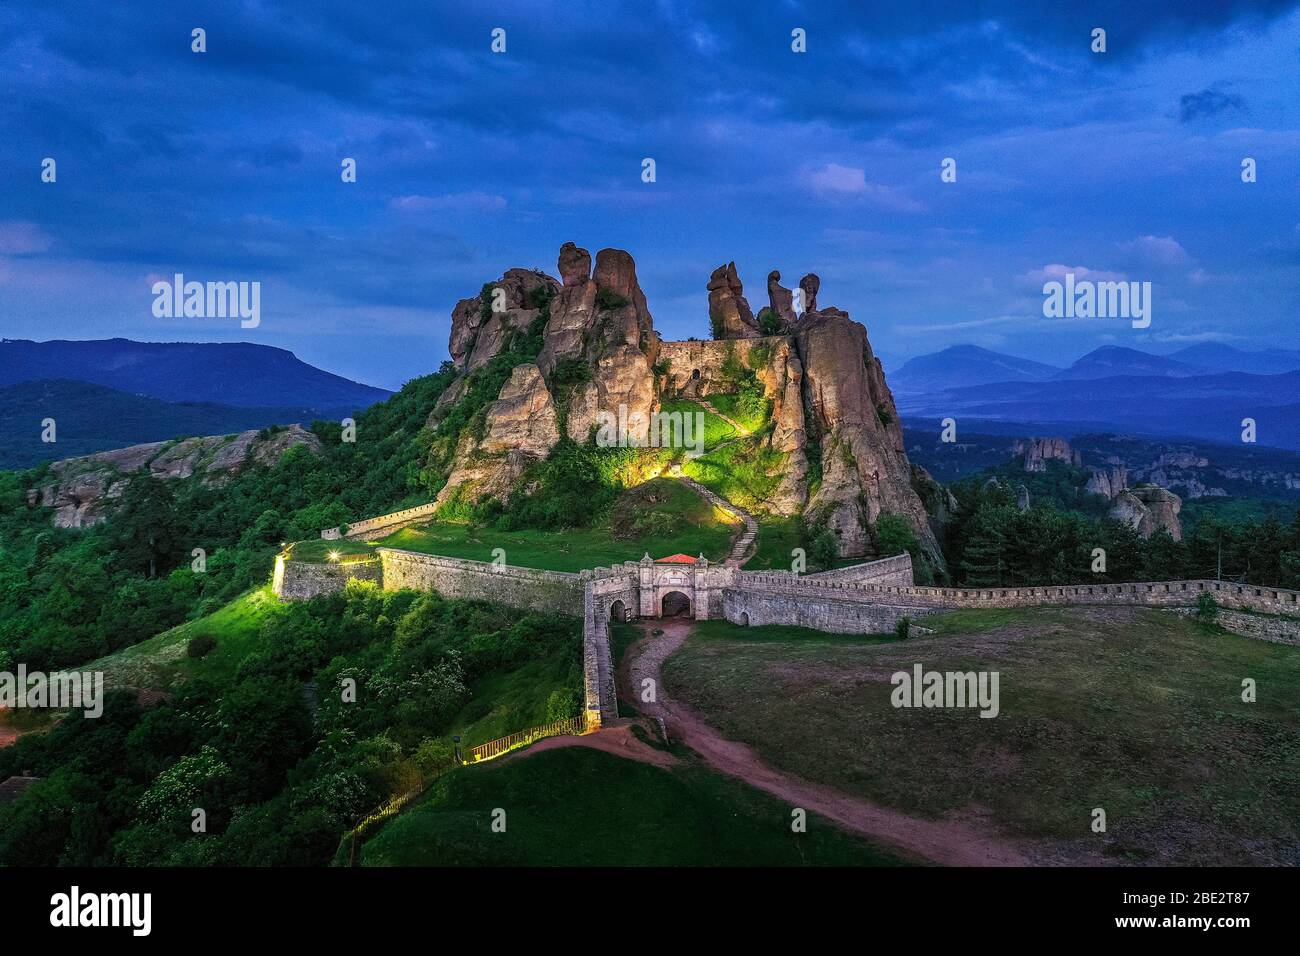 Europe, Bulgarie, Belogradchik, vue aérienne des formations rocheuses de la forteresse de Kaleto Rock Banque D'Images